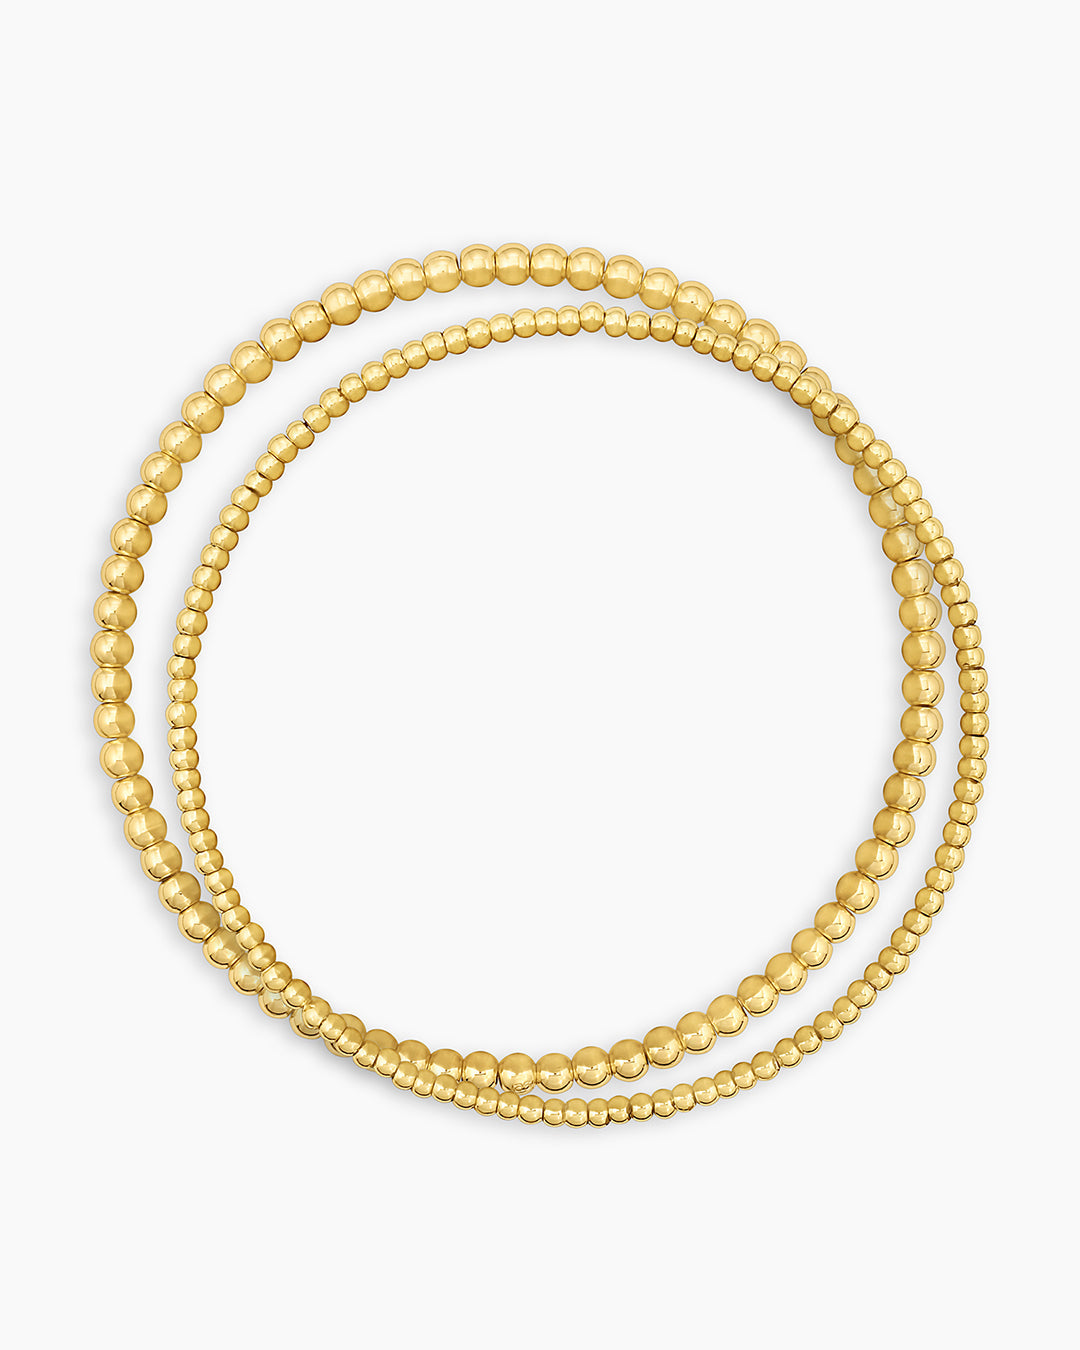 Poppy Chain Necklace & Bracelet Set